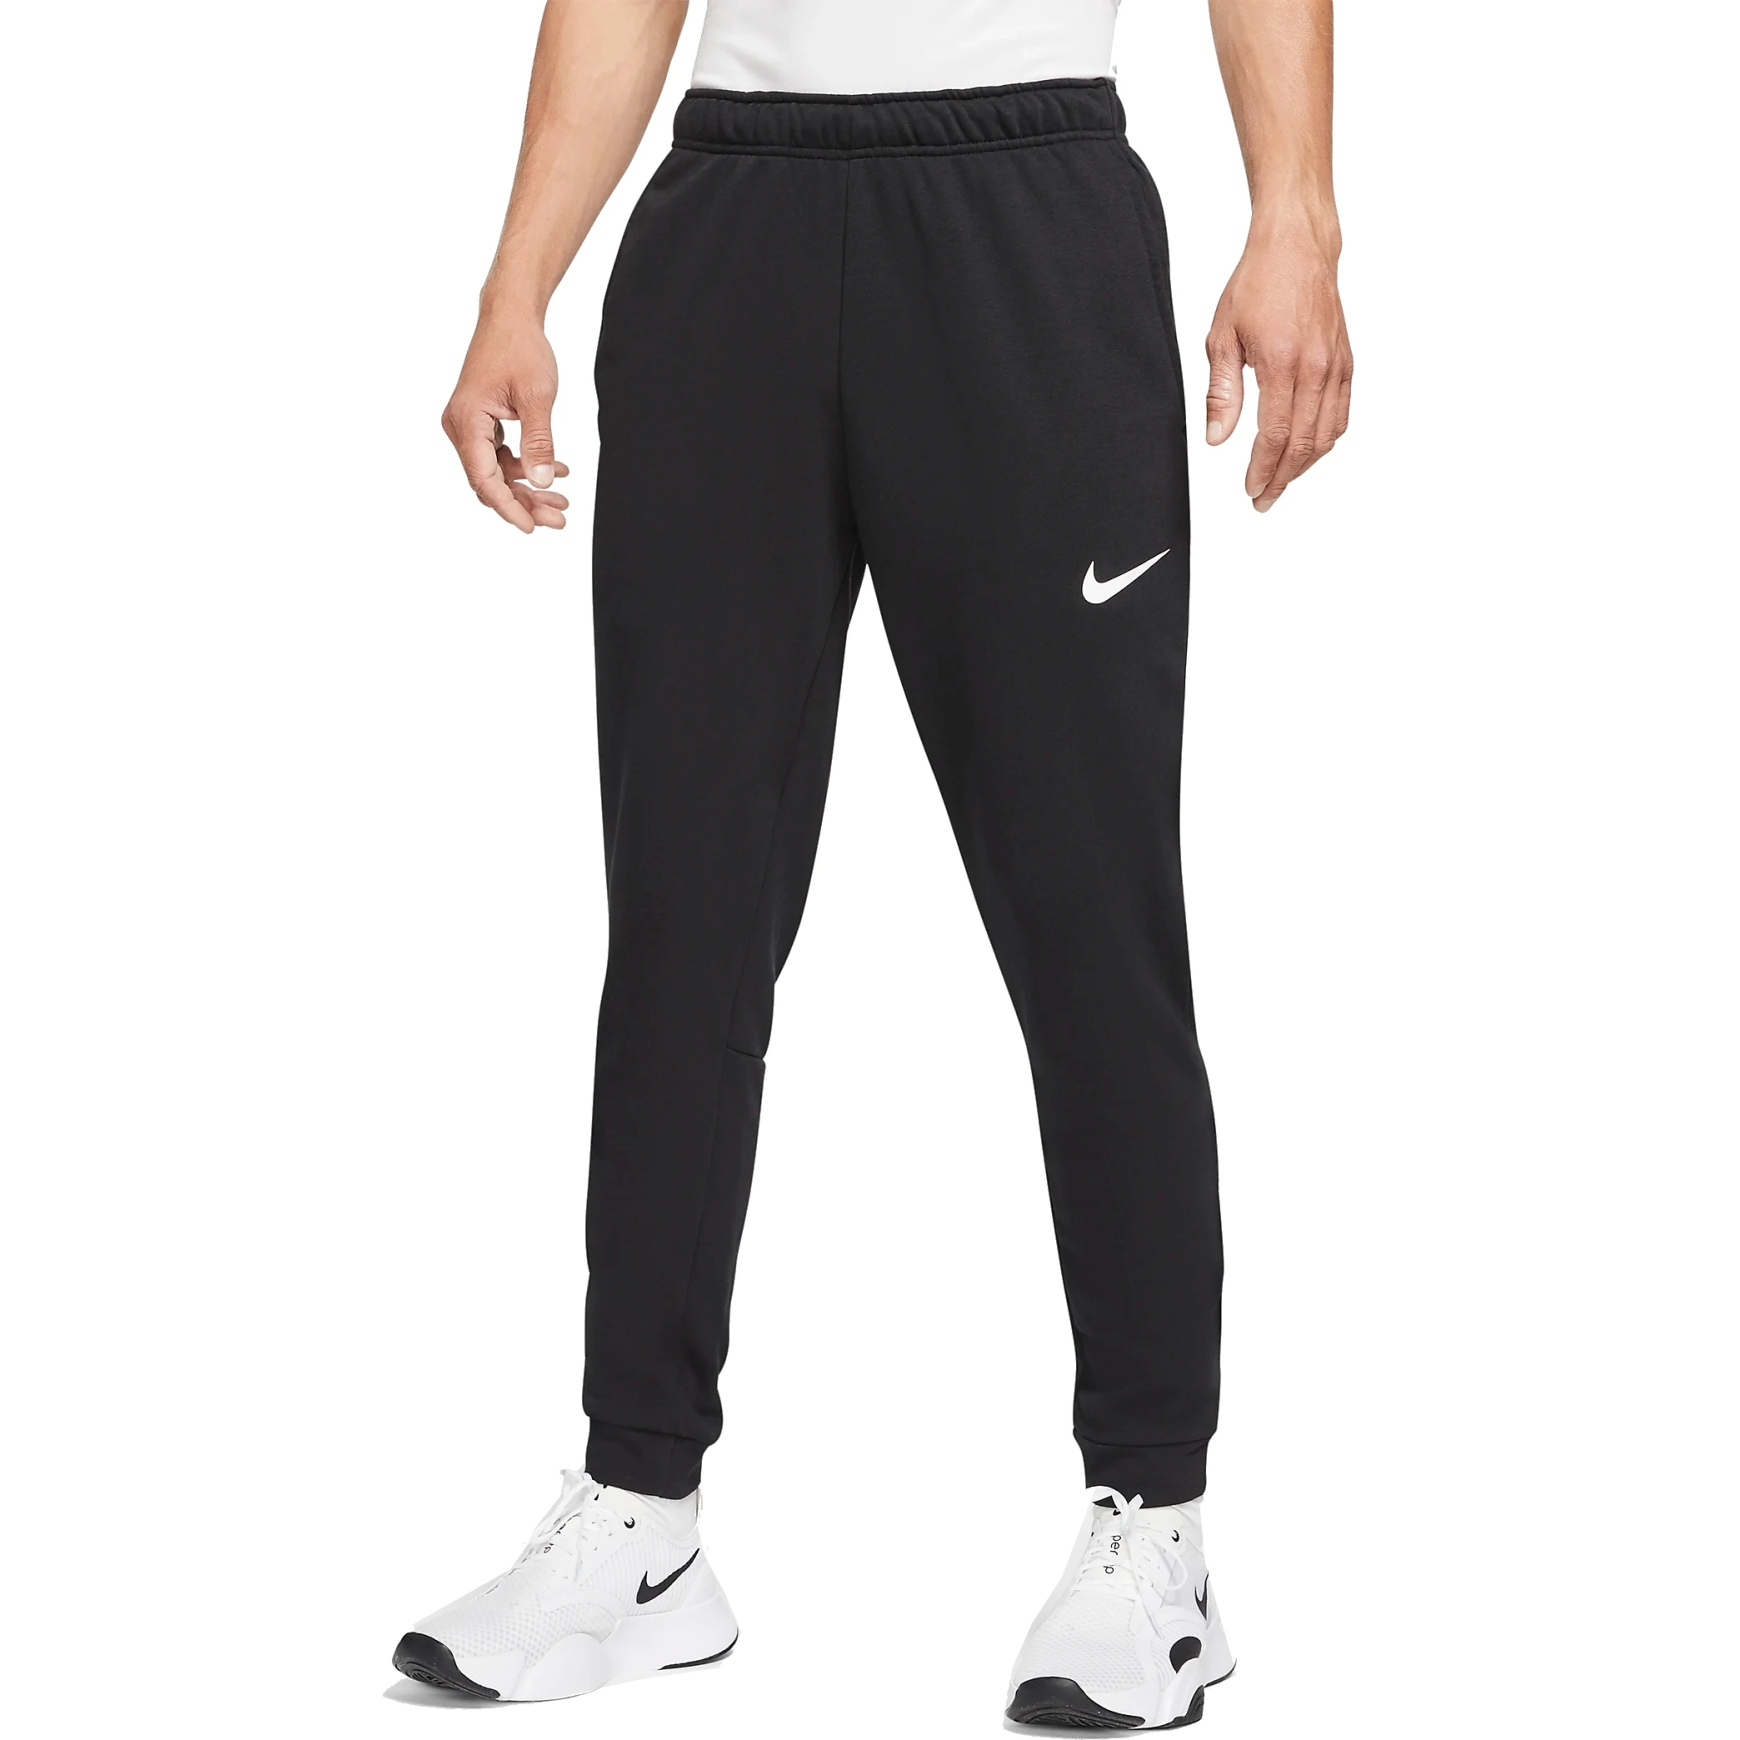 Foto de Nike Pantalón de Entrenamiento Hombre - Dry Tapered - negro/blanco CZ6379-010